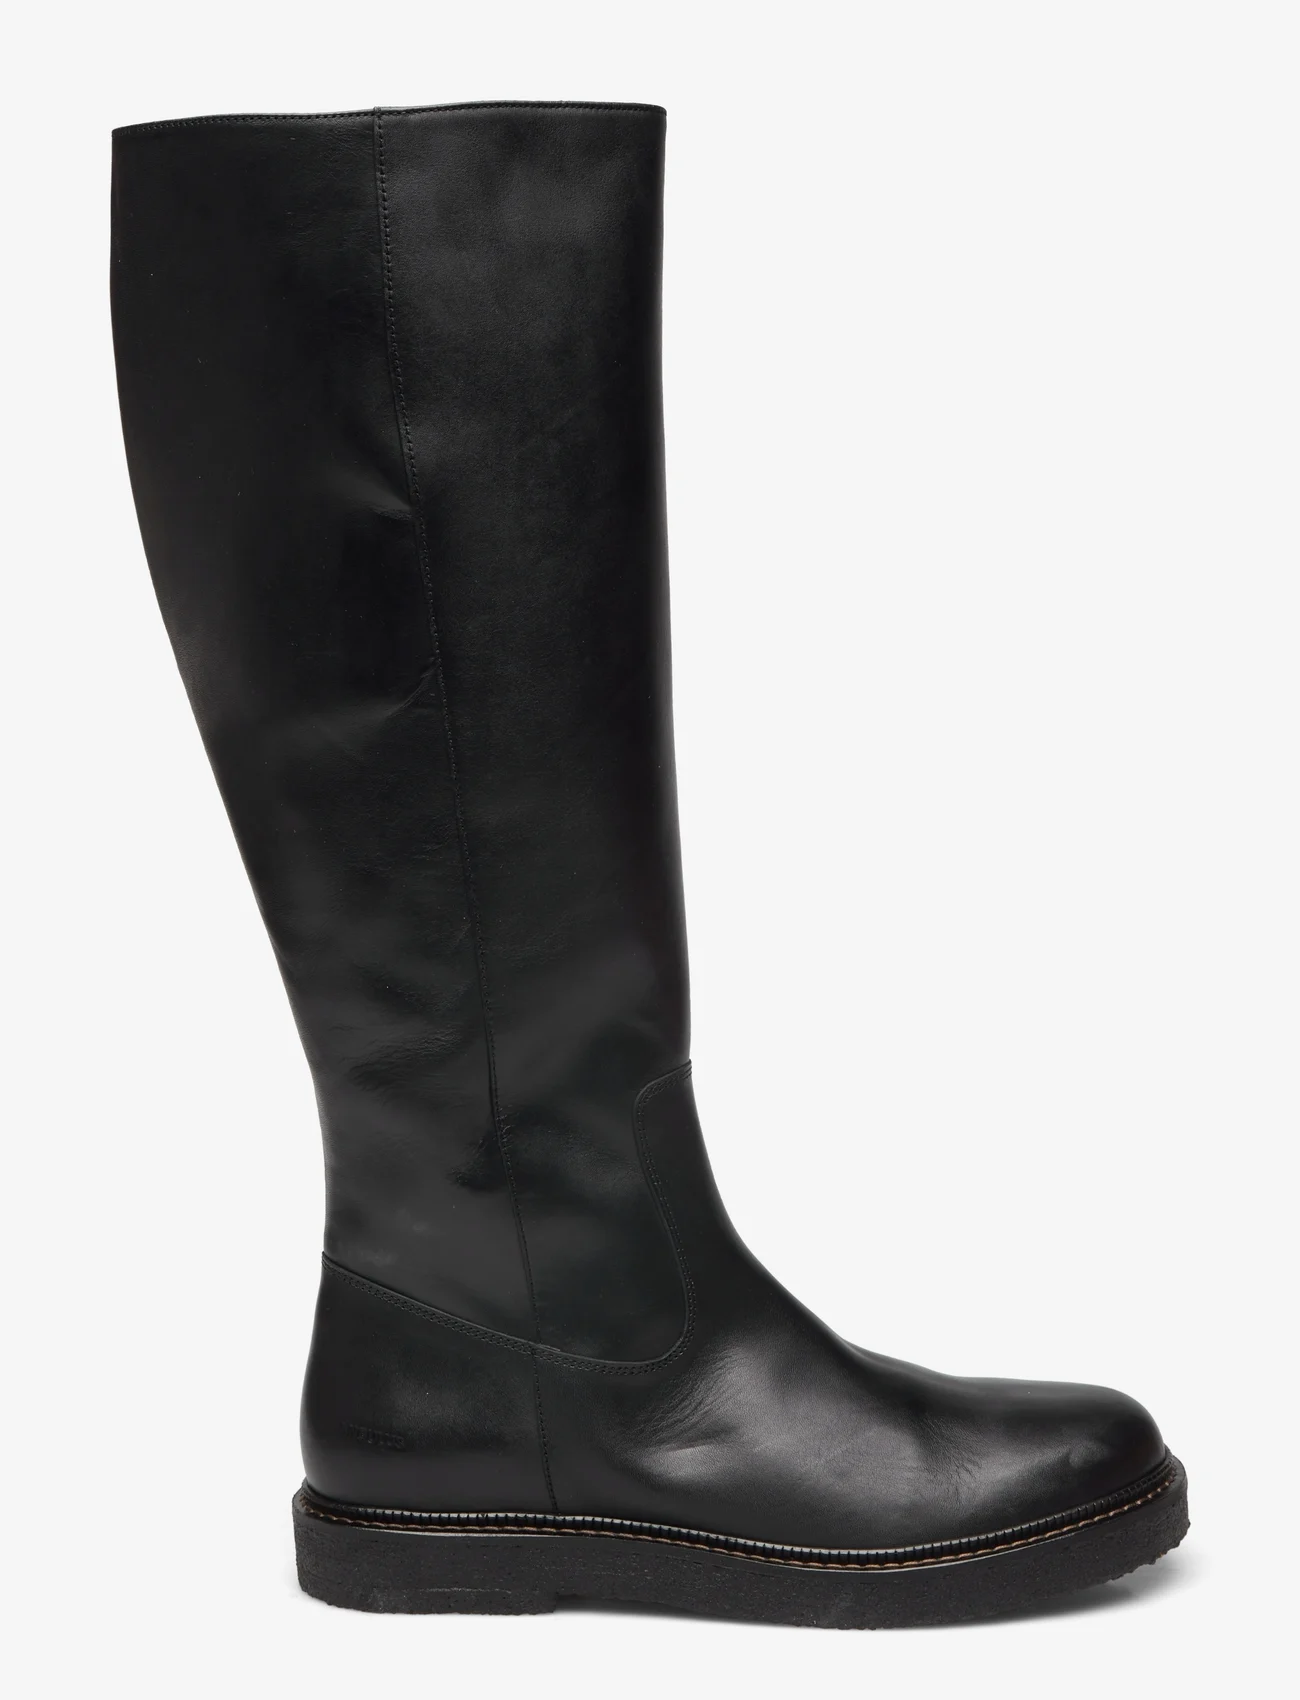 ANGULUS - Boots - flat - höga stövlar - 1604/001 black/black - 1